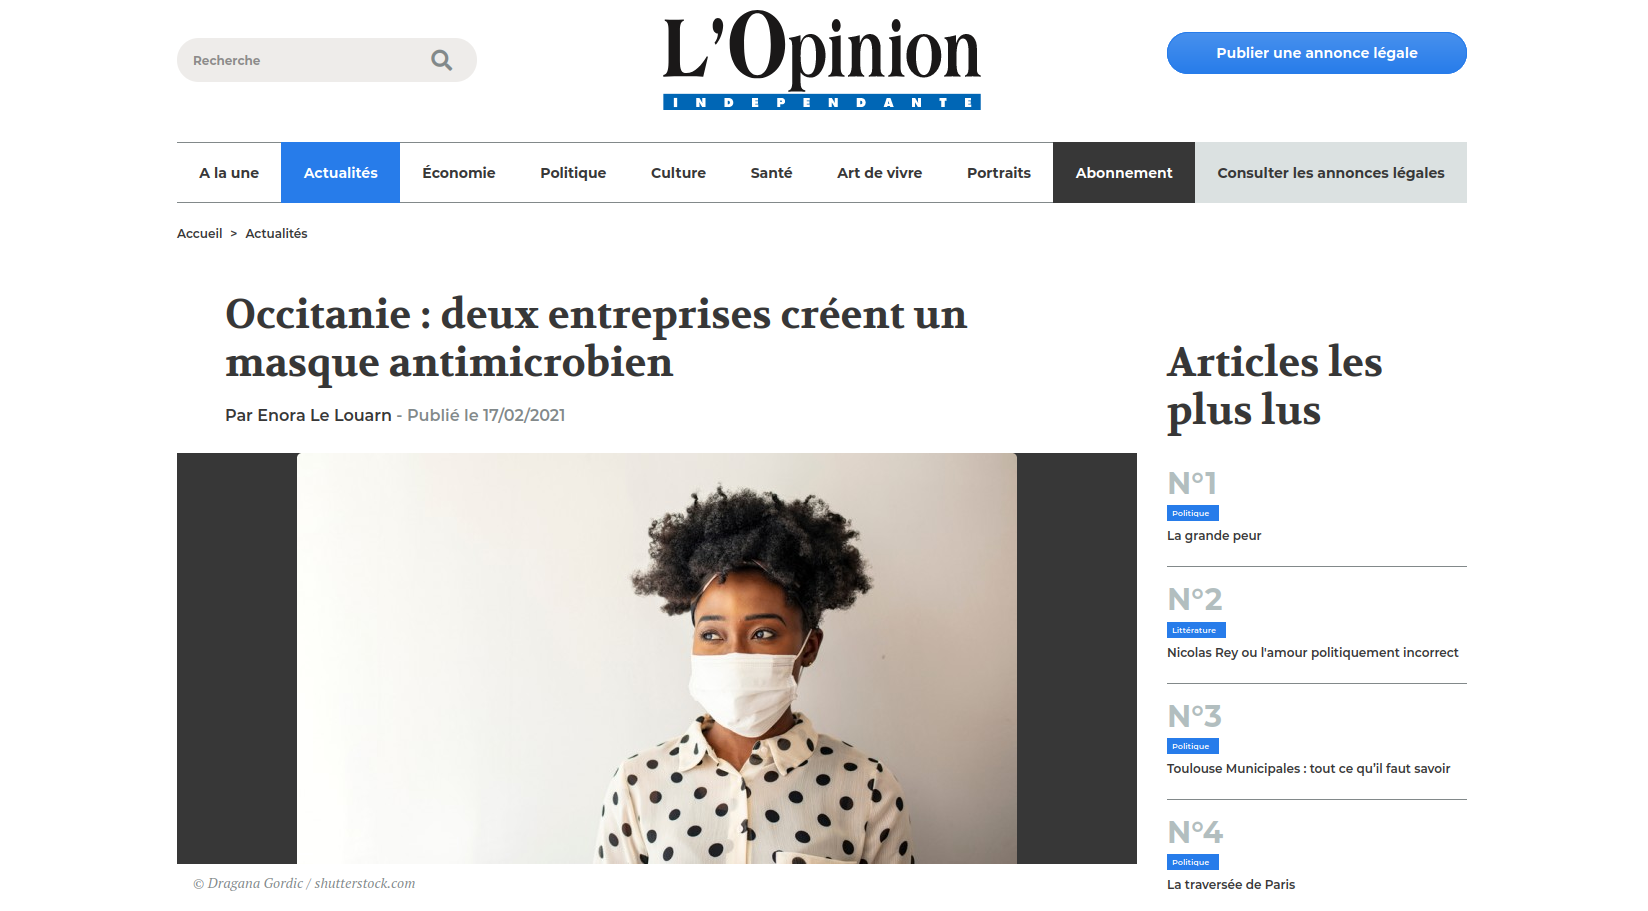 Occitanie : deux entreprises créent un masque antimicrobien